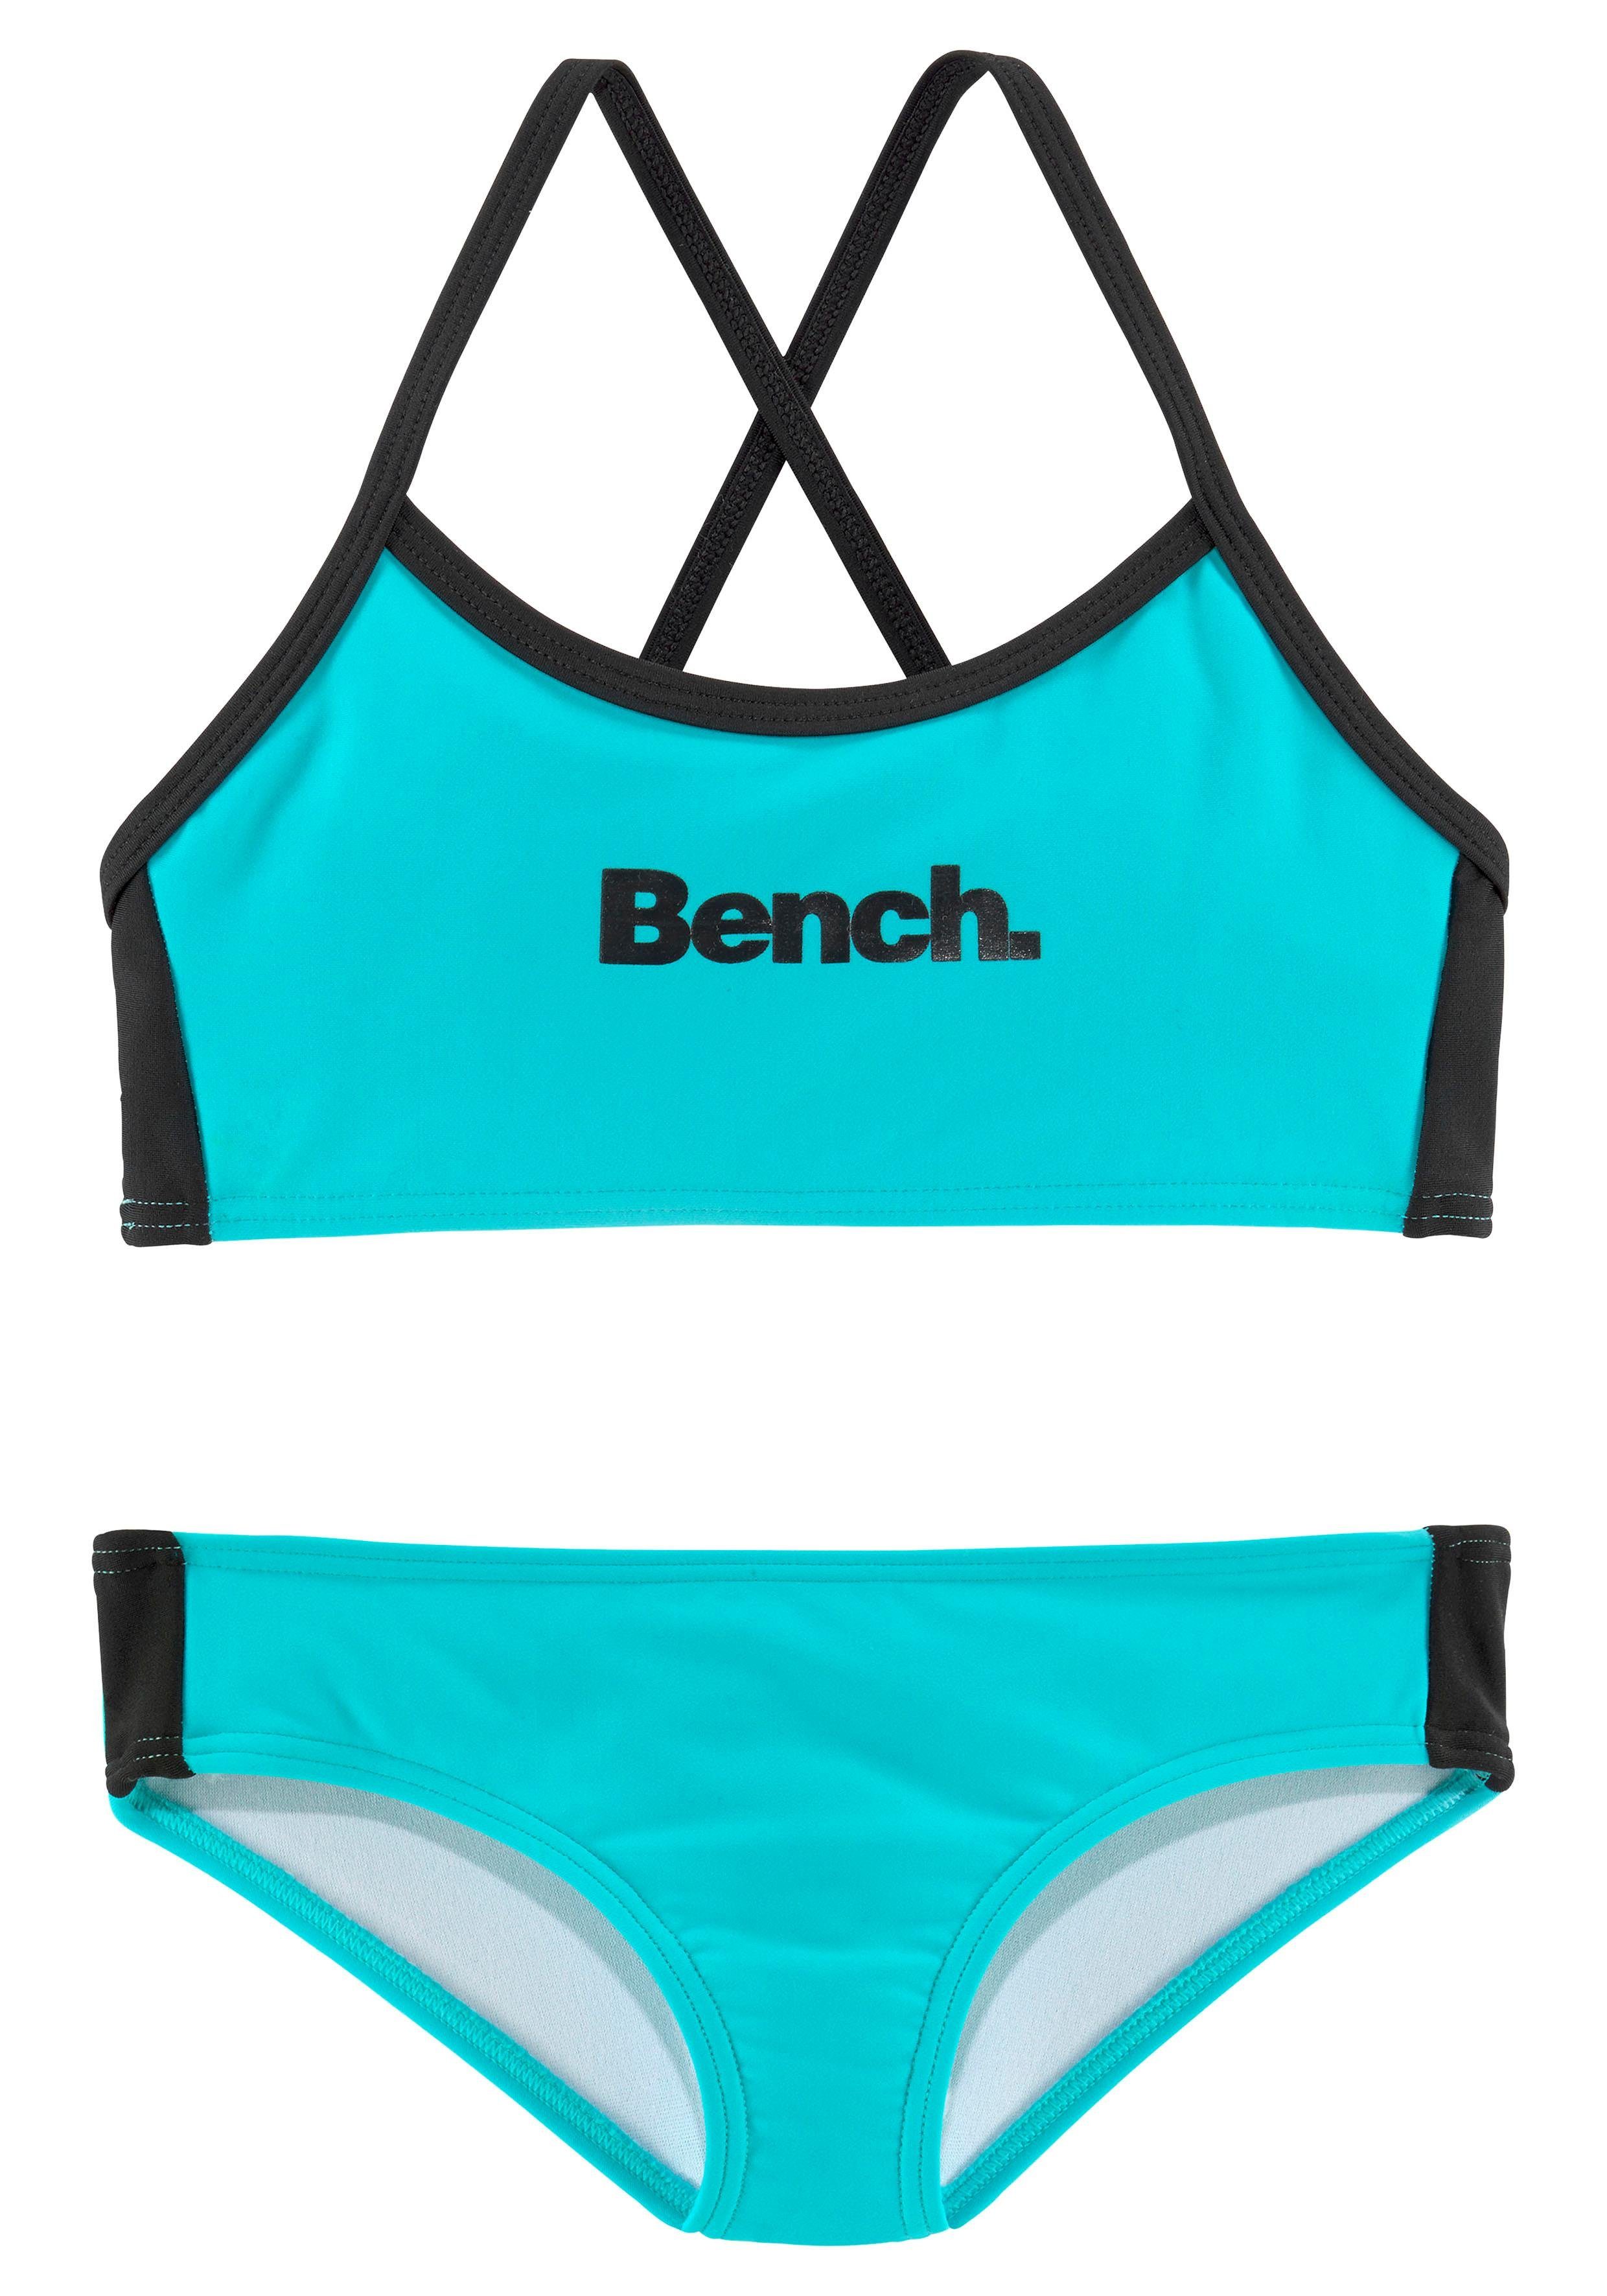 Bench. Bustier-Bikini mit gekreuzten türkis-schwarz Trägern